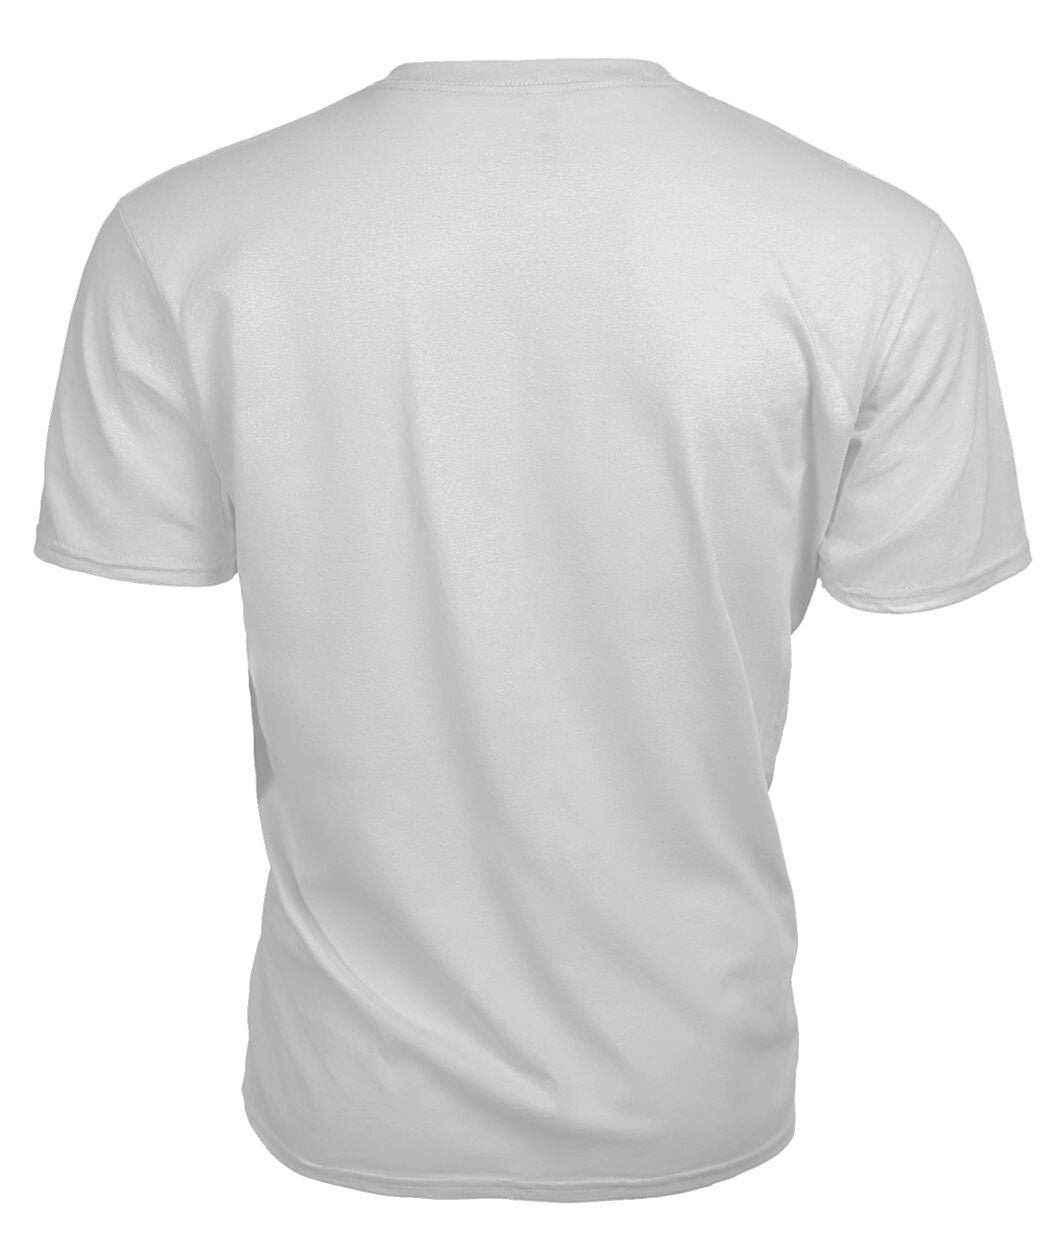 Pentland Tartan Crest 2D T-shirt - Blood Runs Through My Veins Style